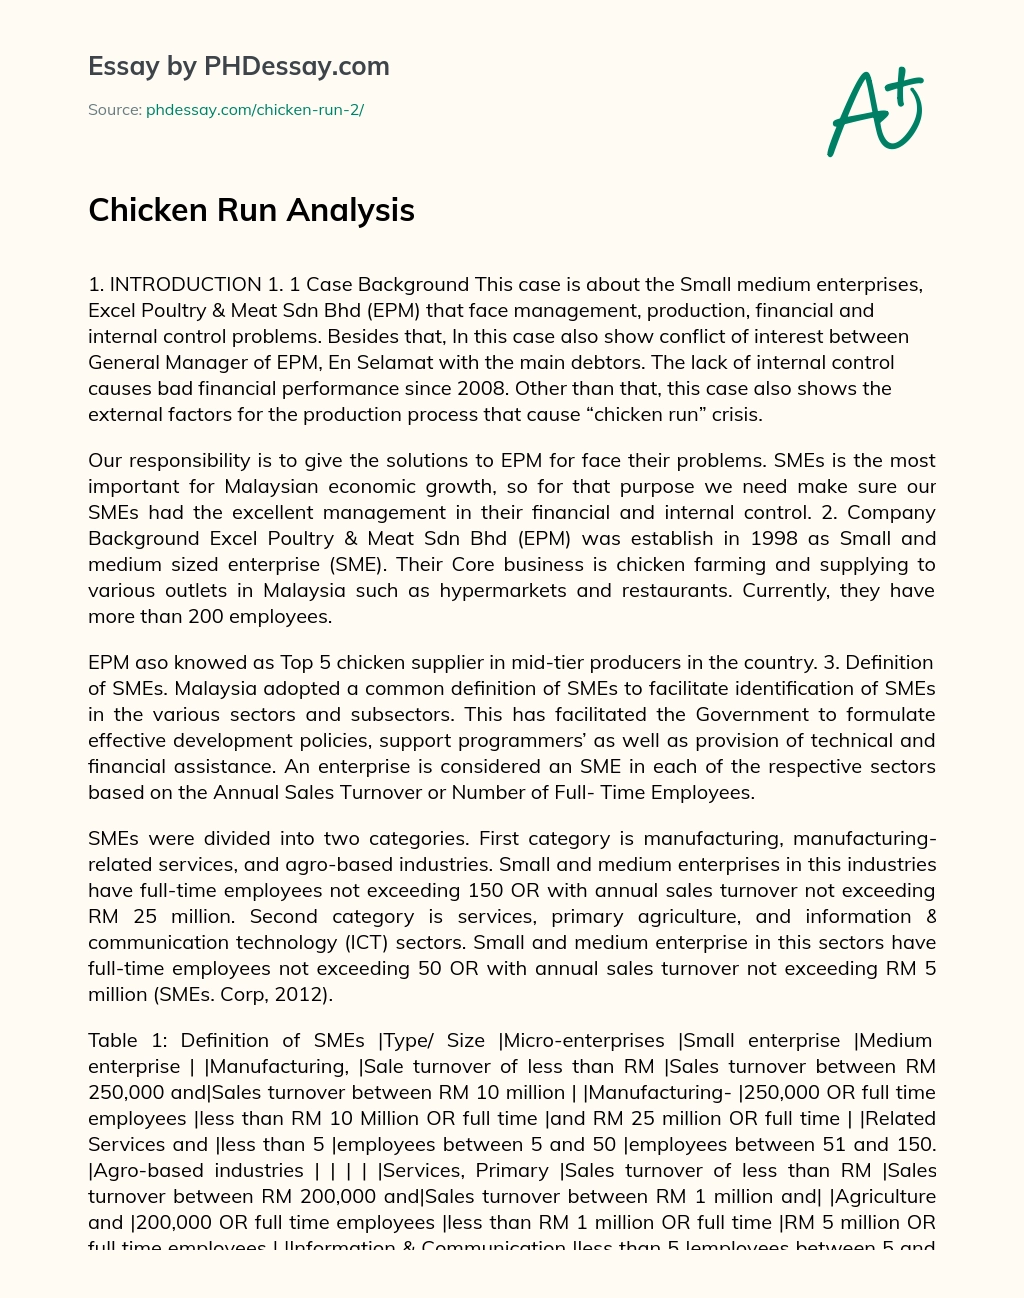 Chicken Run Analysis essay